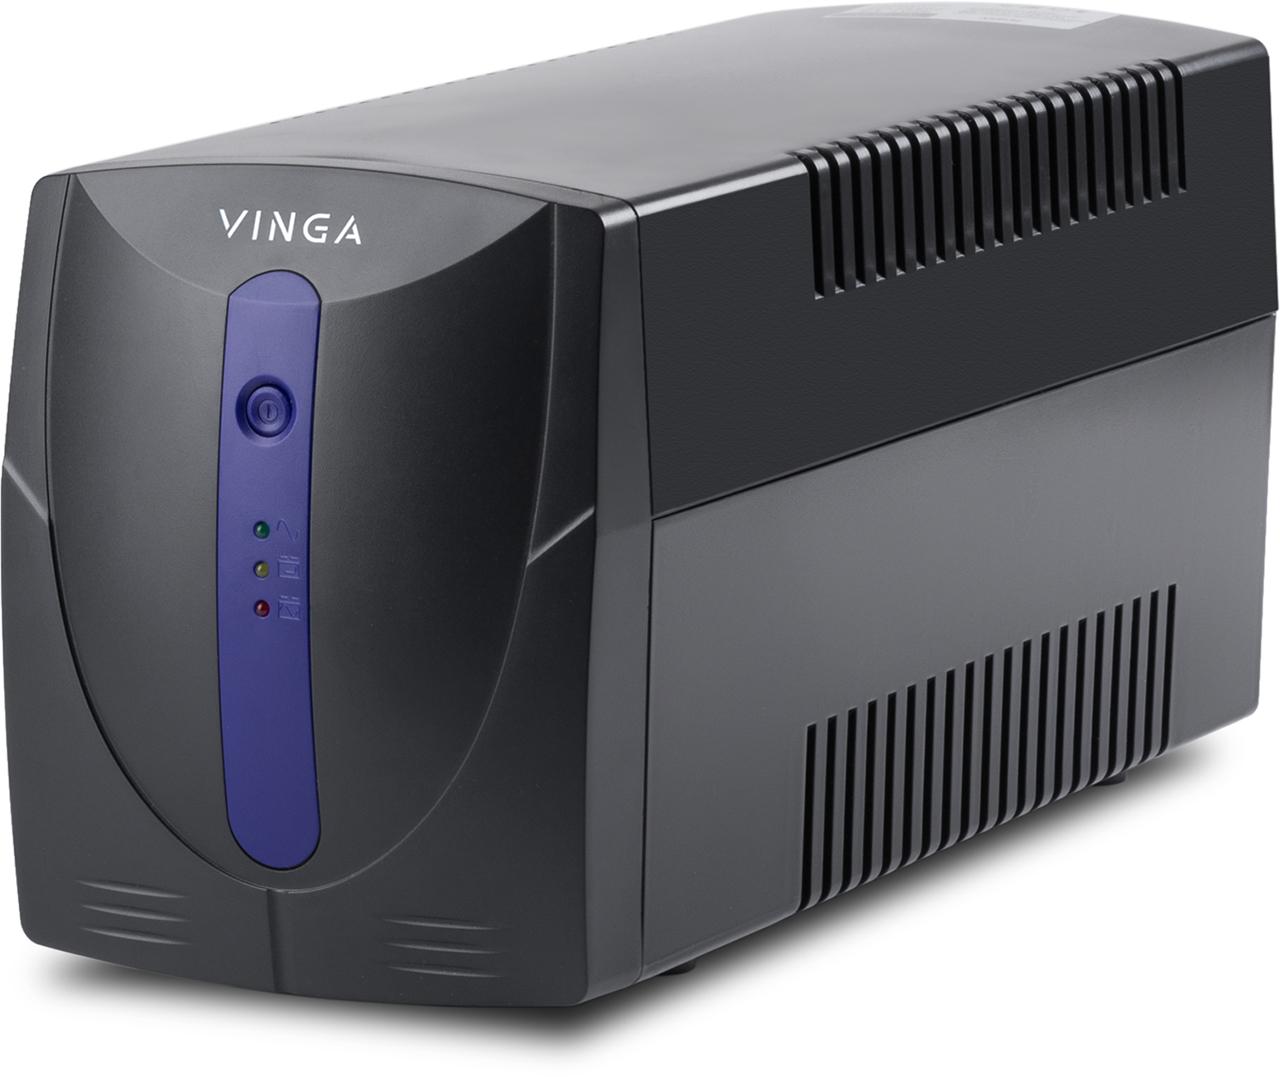 Источник бесперебойного питания Vinga LED 1200VA (VPE-1200PU) характеристики - фотография 7